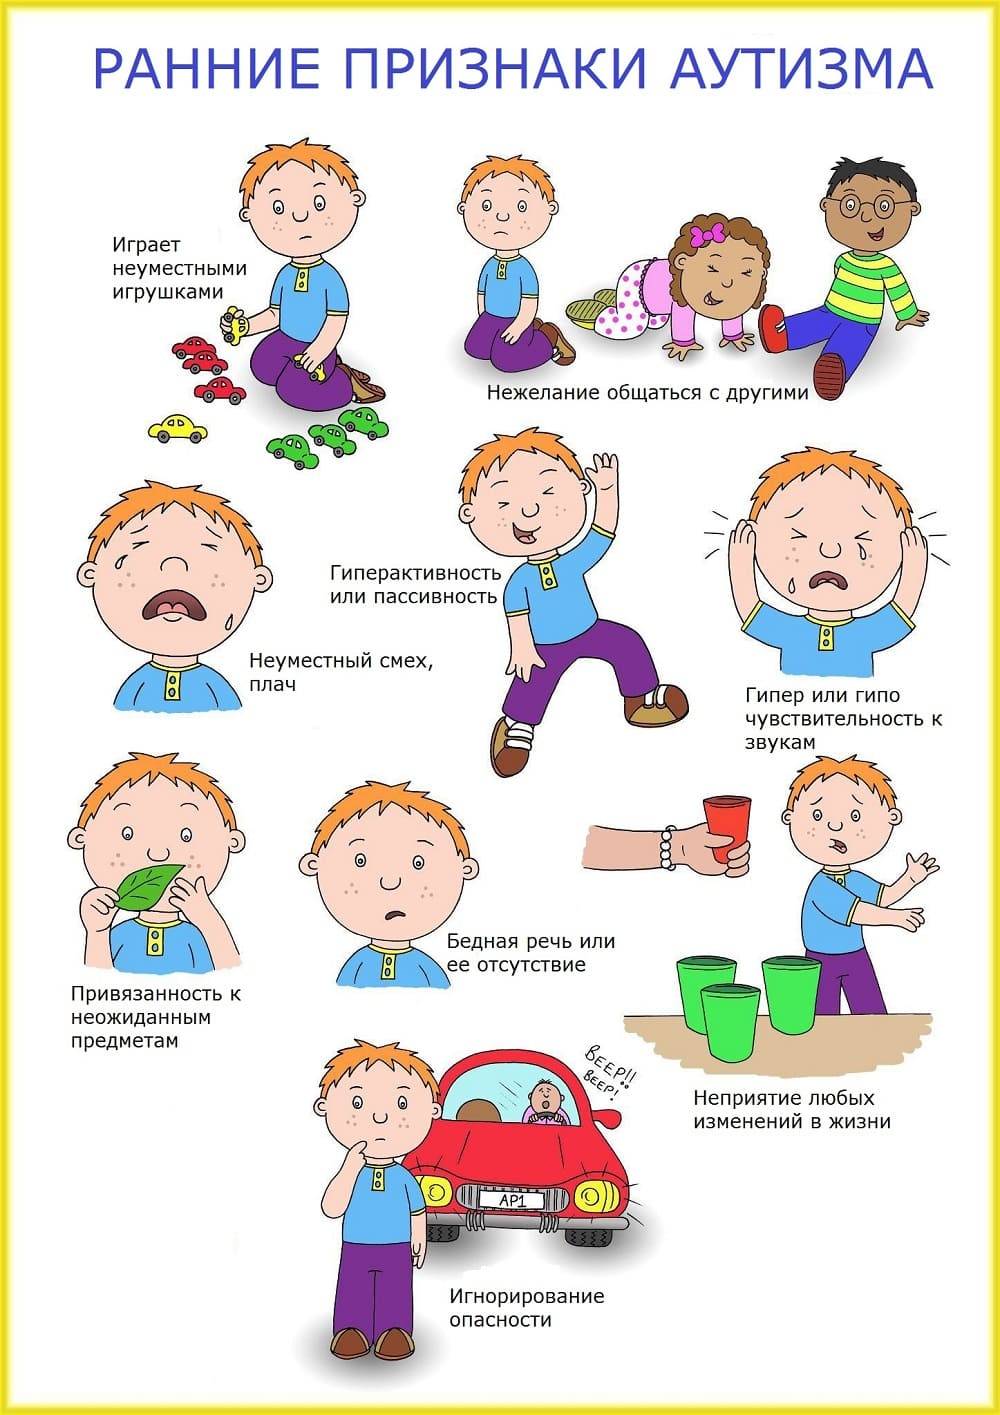 Аутизм у детей: симптомы, фото, причины, признаки аутизма